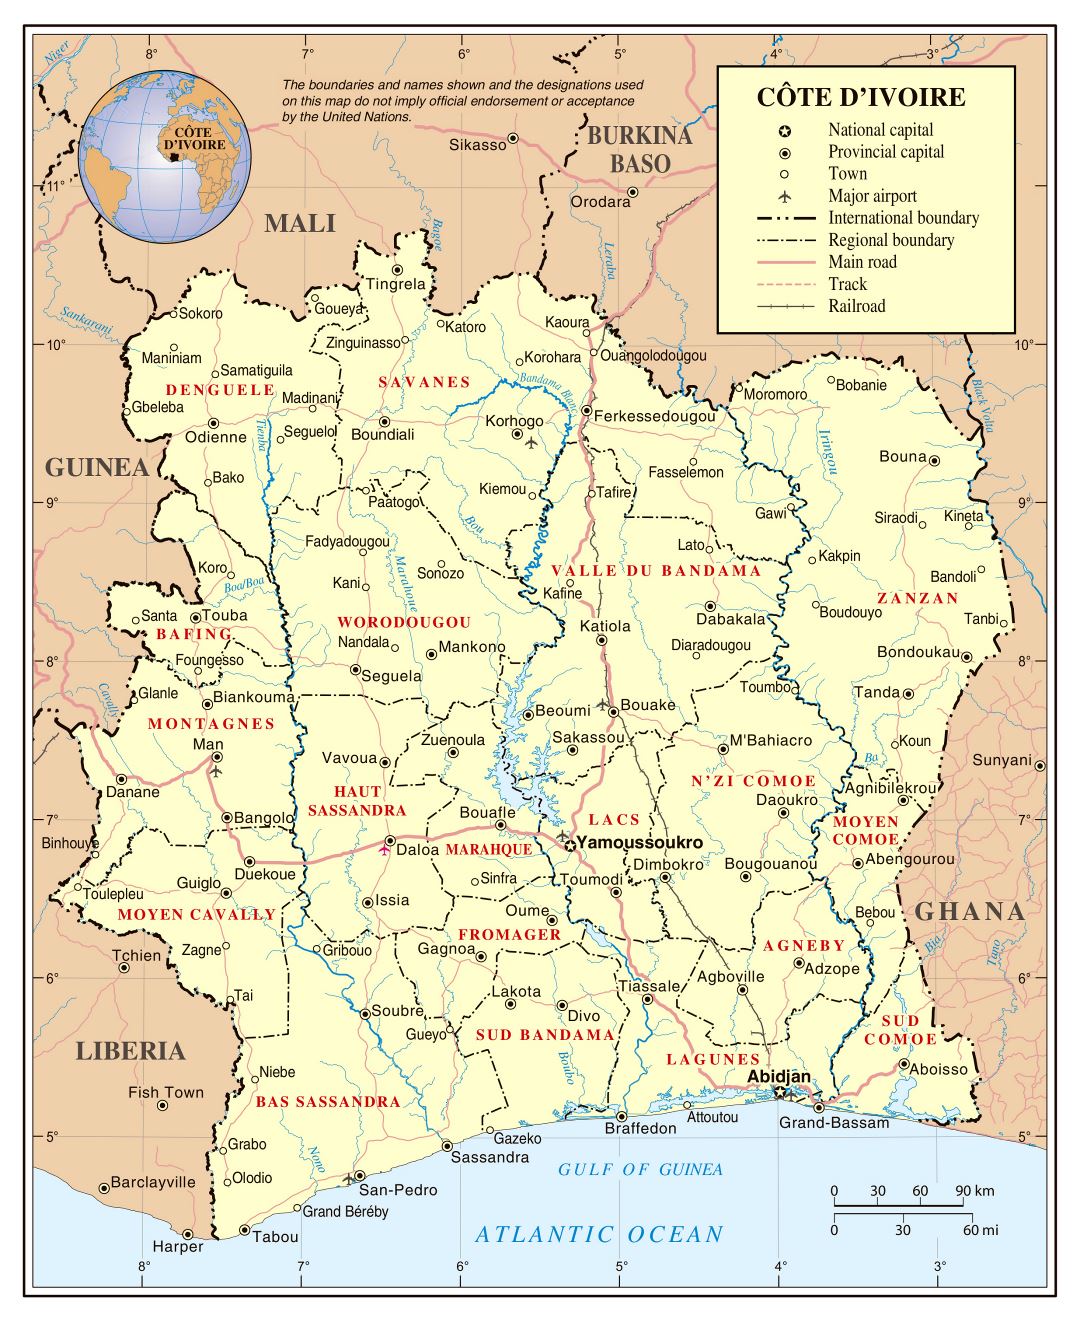 Большая детальная политическая и административная карта Кот-д'Ивуара с дорогами, железными дорогами, городами и аэропортами